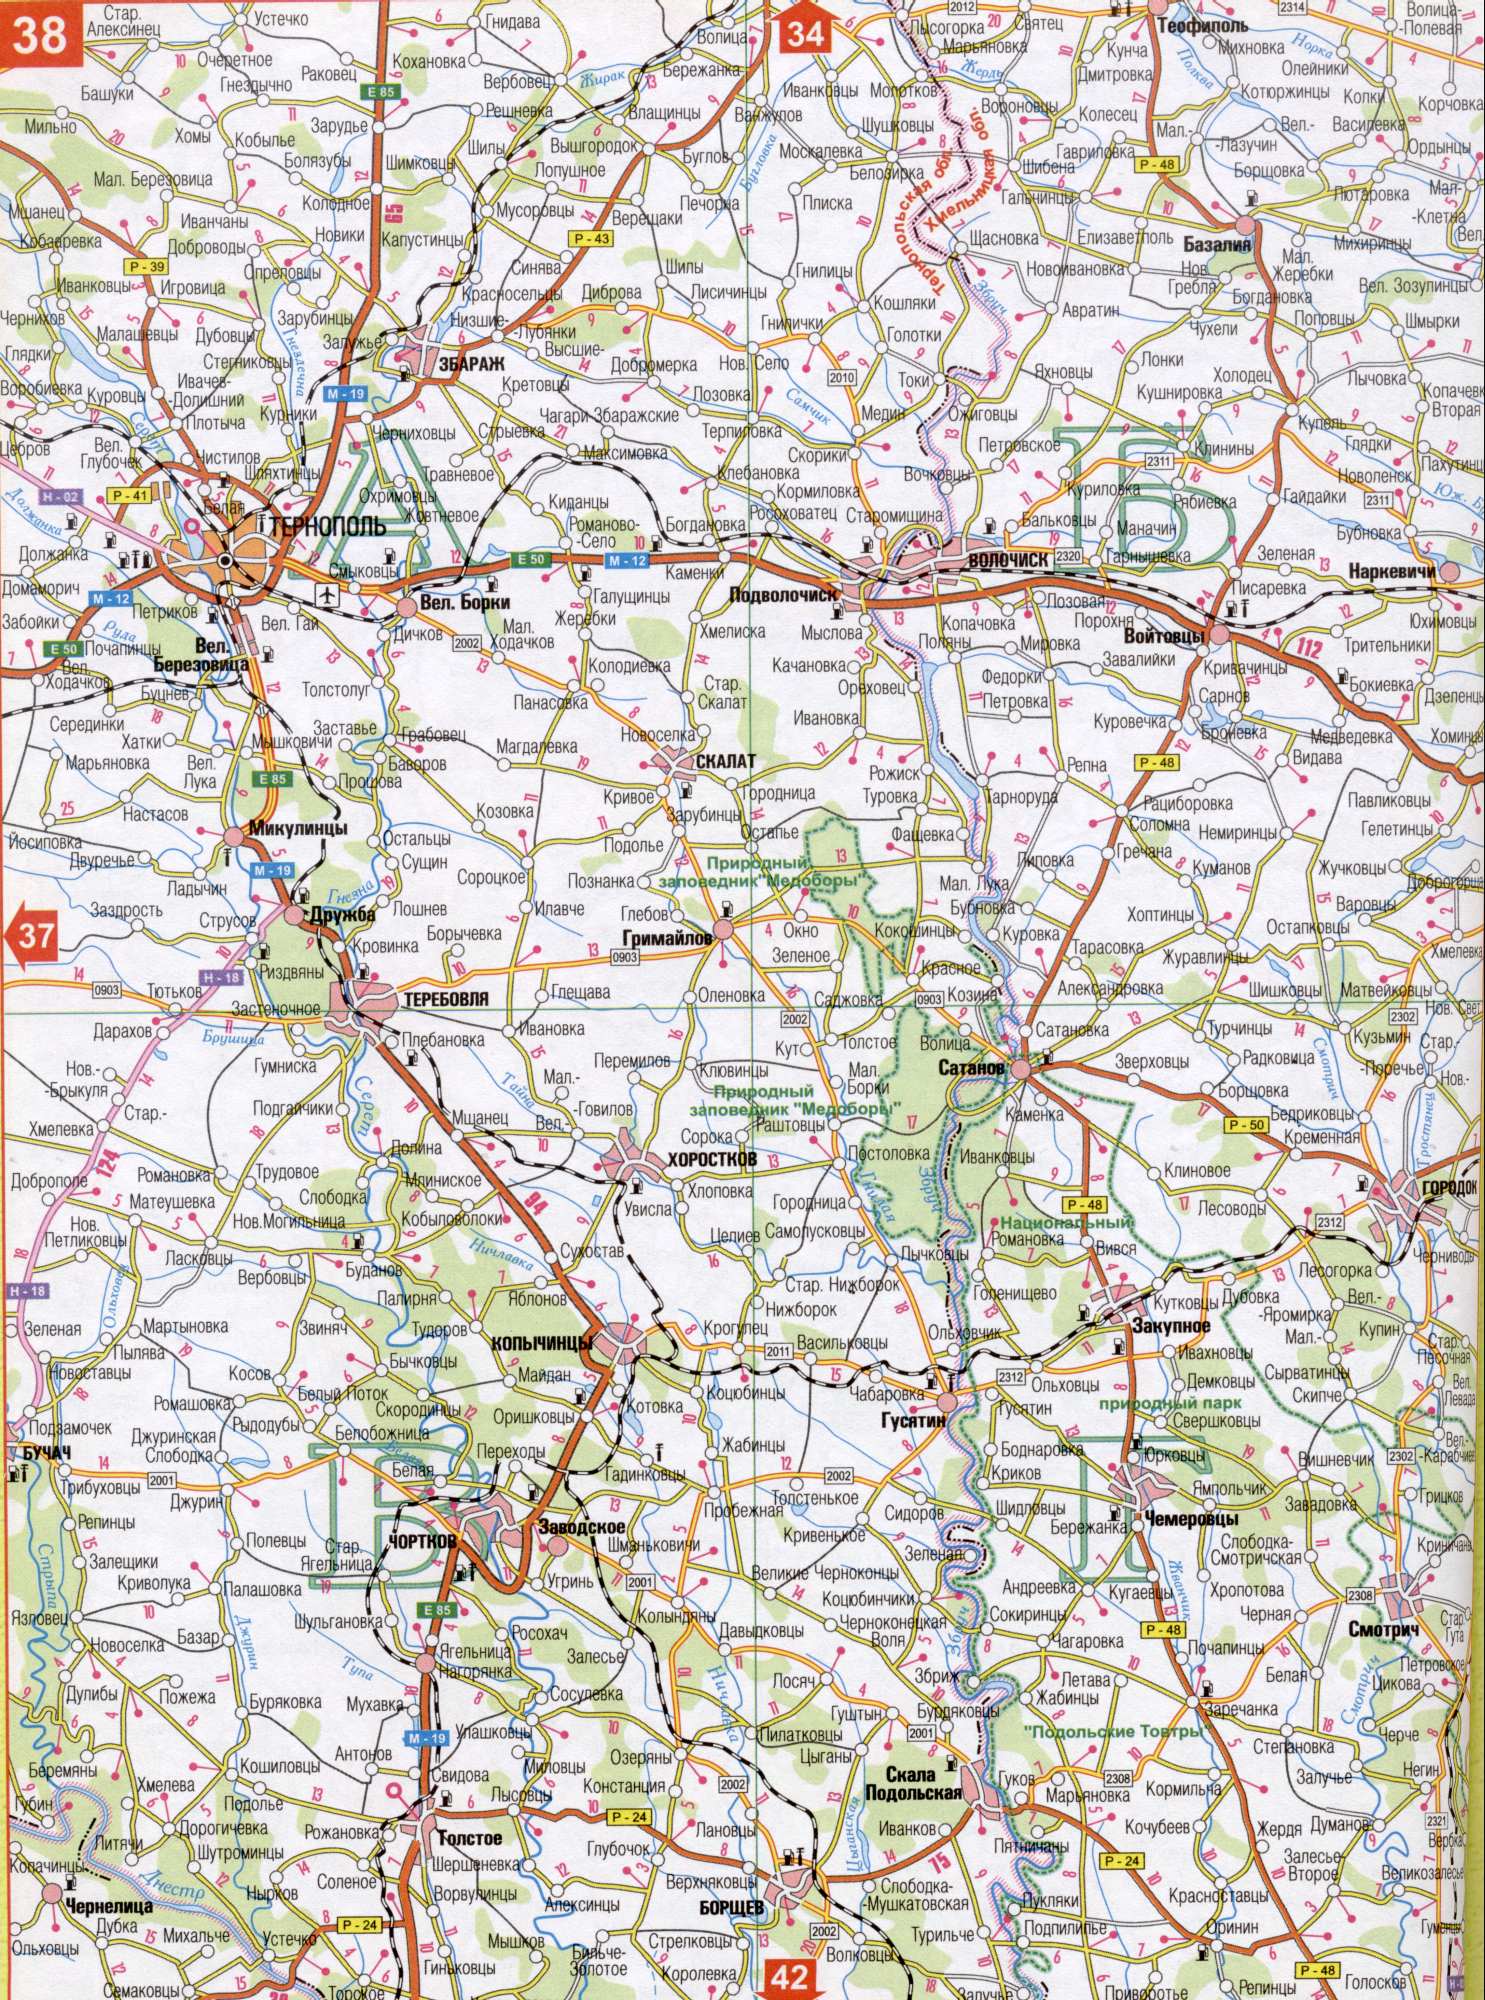 Carte de la région de Ternopil de l'Ukraine (centre régional de Ternopil g). Télécharger une carte détaillée des routes